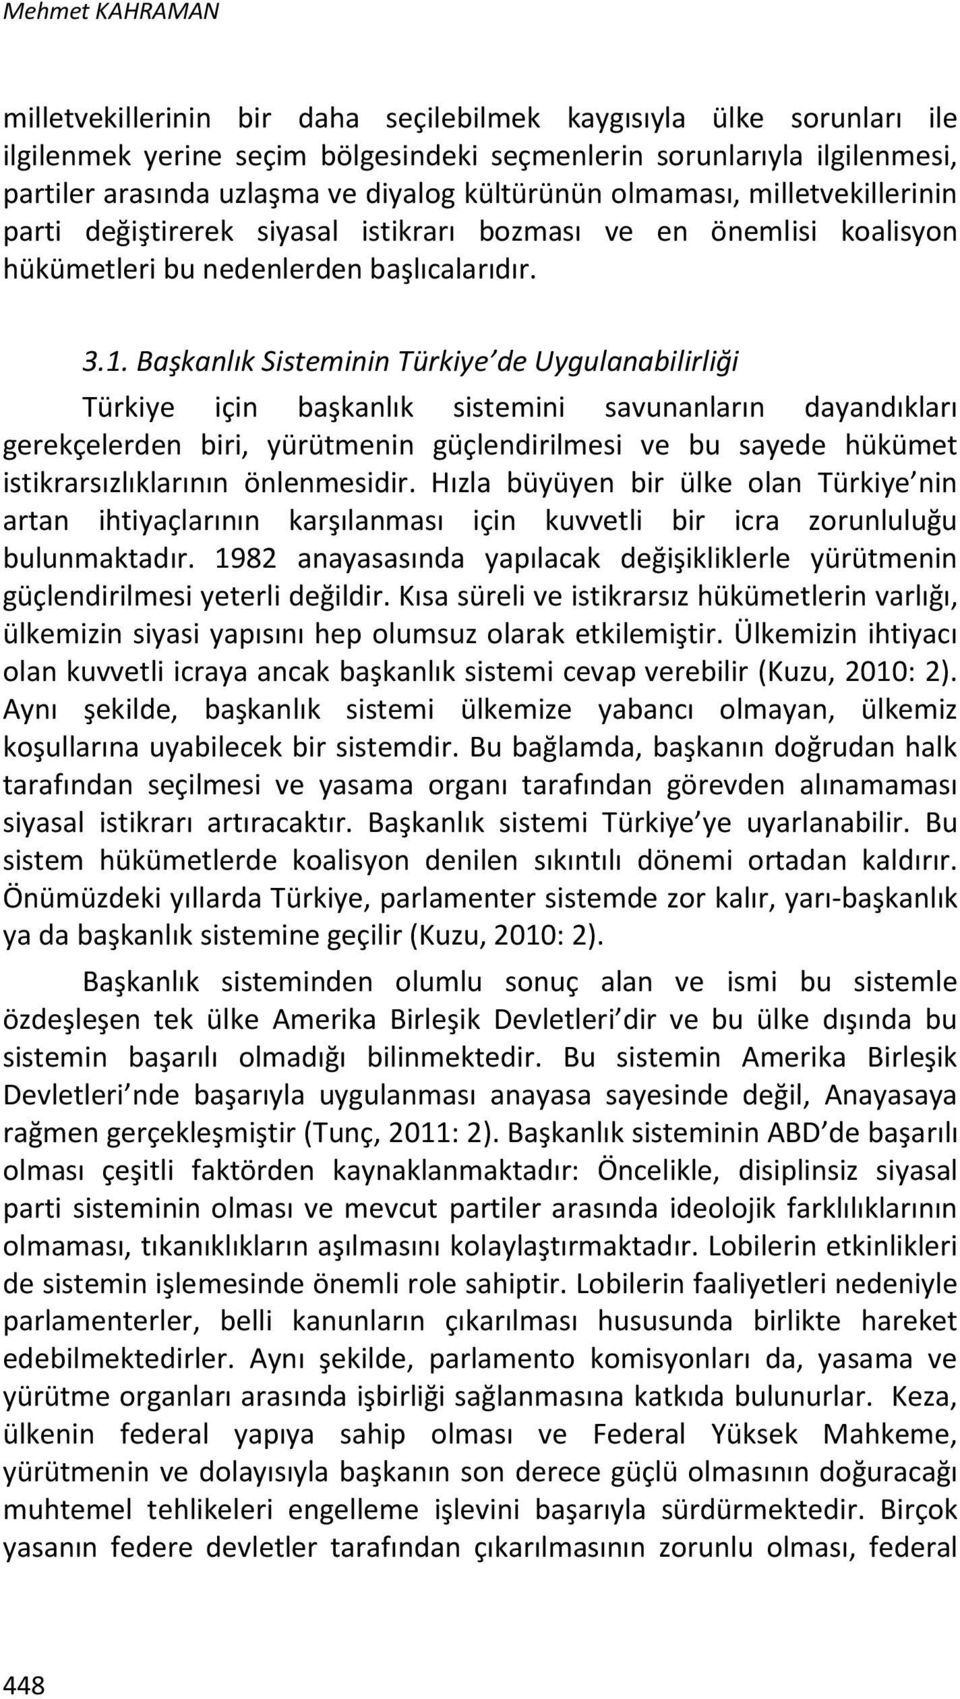 Başkanlık Sisteminin Türkiye de Uygulanabilirliği Türkiye için başkanlık sistemini savunanların dayandıkları gerekçelerden biri, yürütmenin güçlendirilmesi ve bu sayede hükümet istikrarsızlıklarının